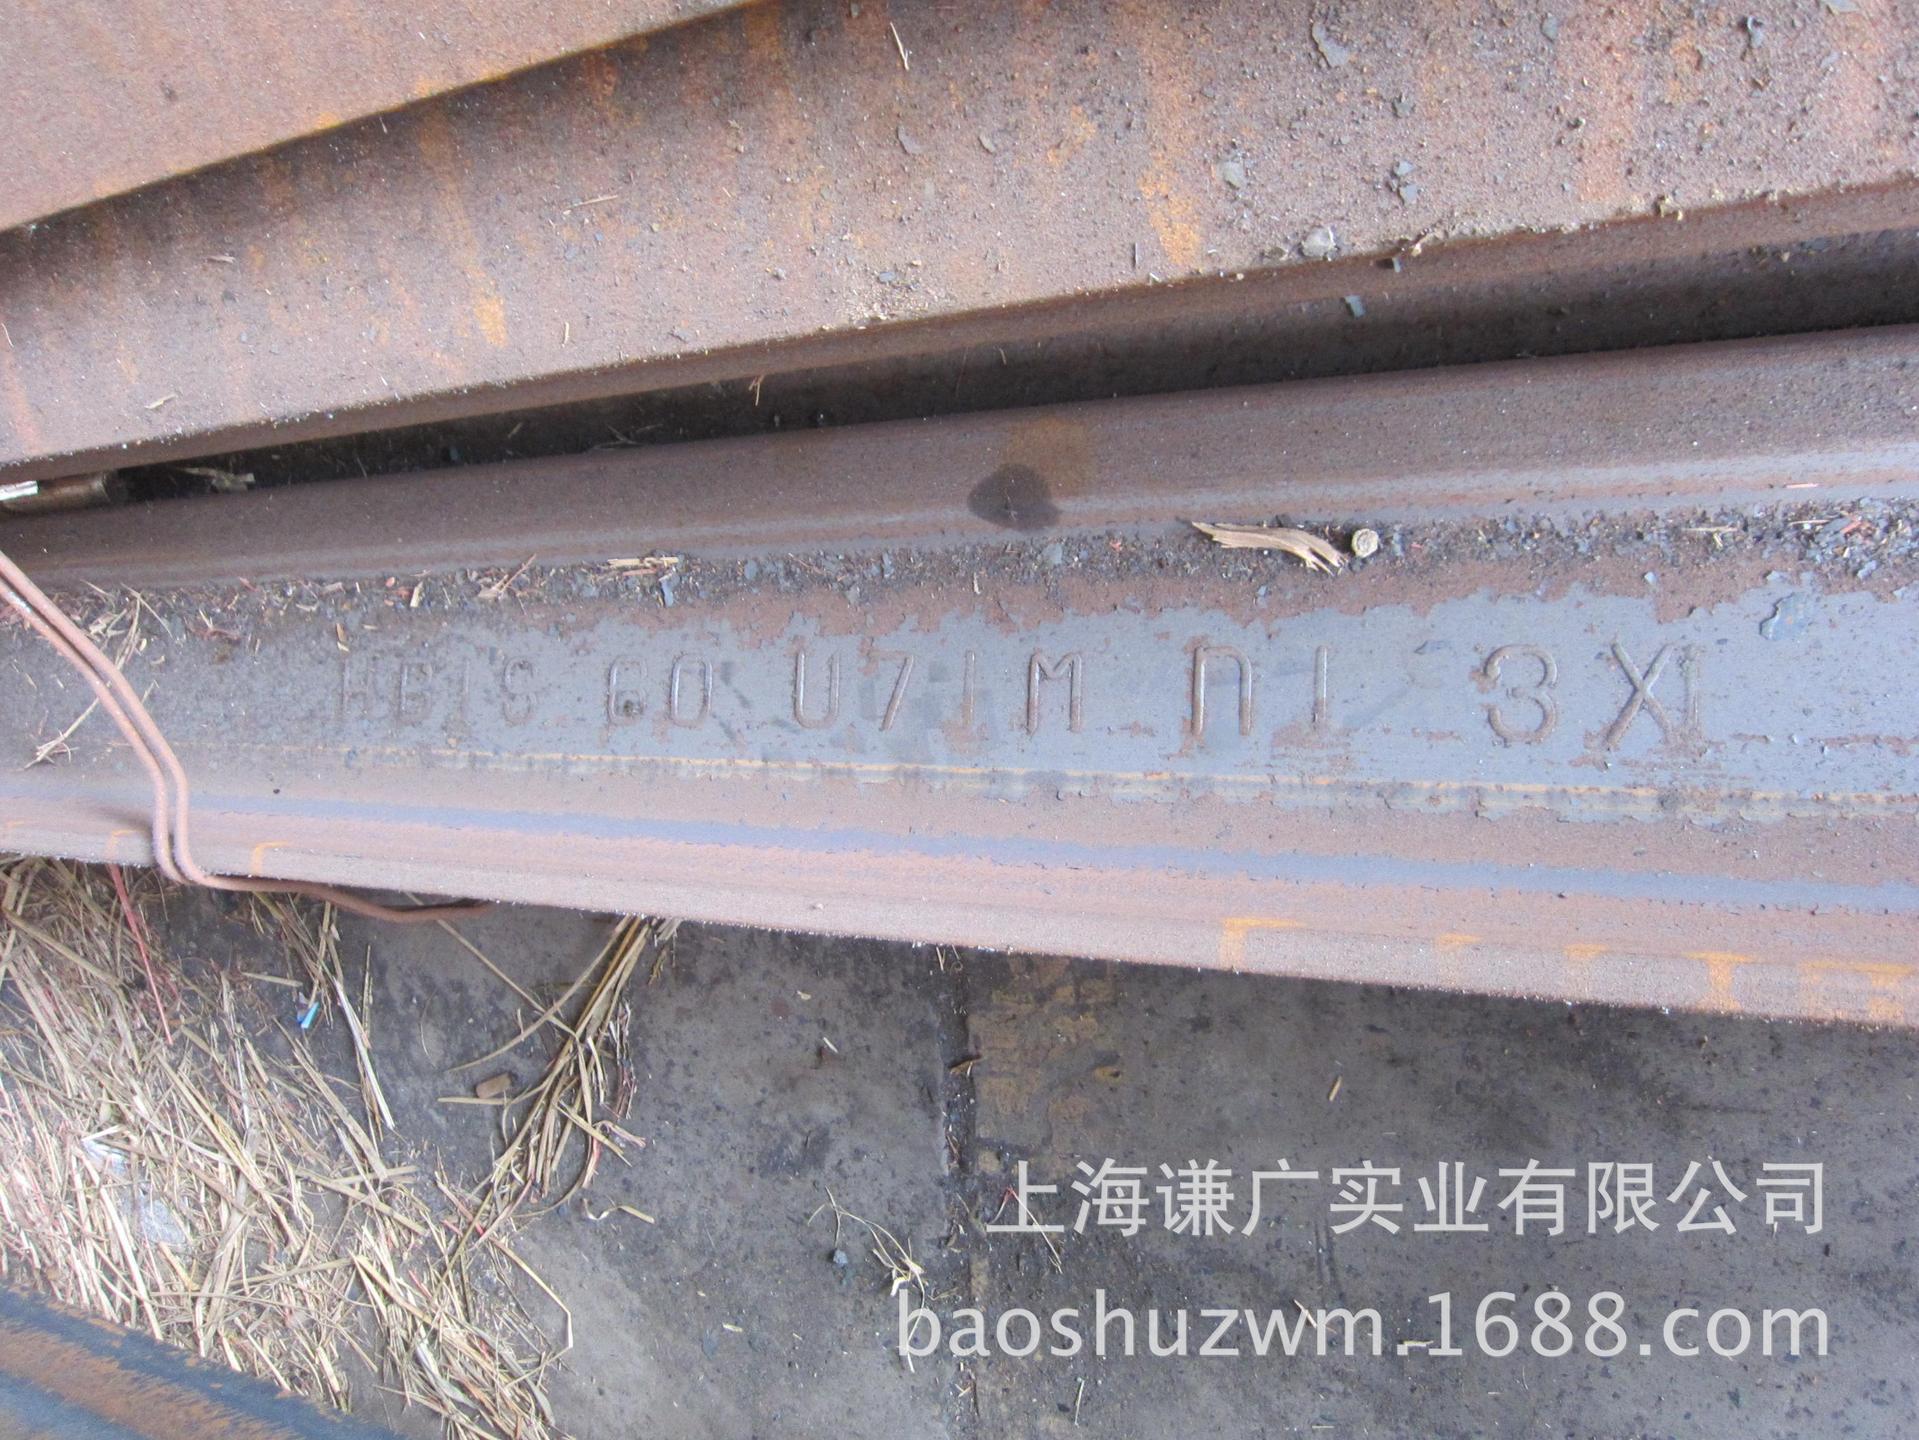 上海p9kg热轧钢轨现货直销 鞍钢轻轨上海一级代理商